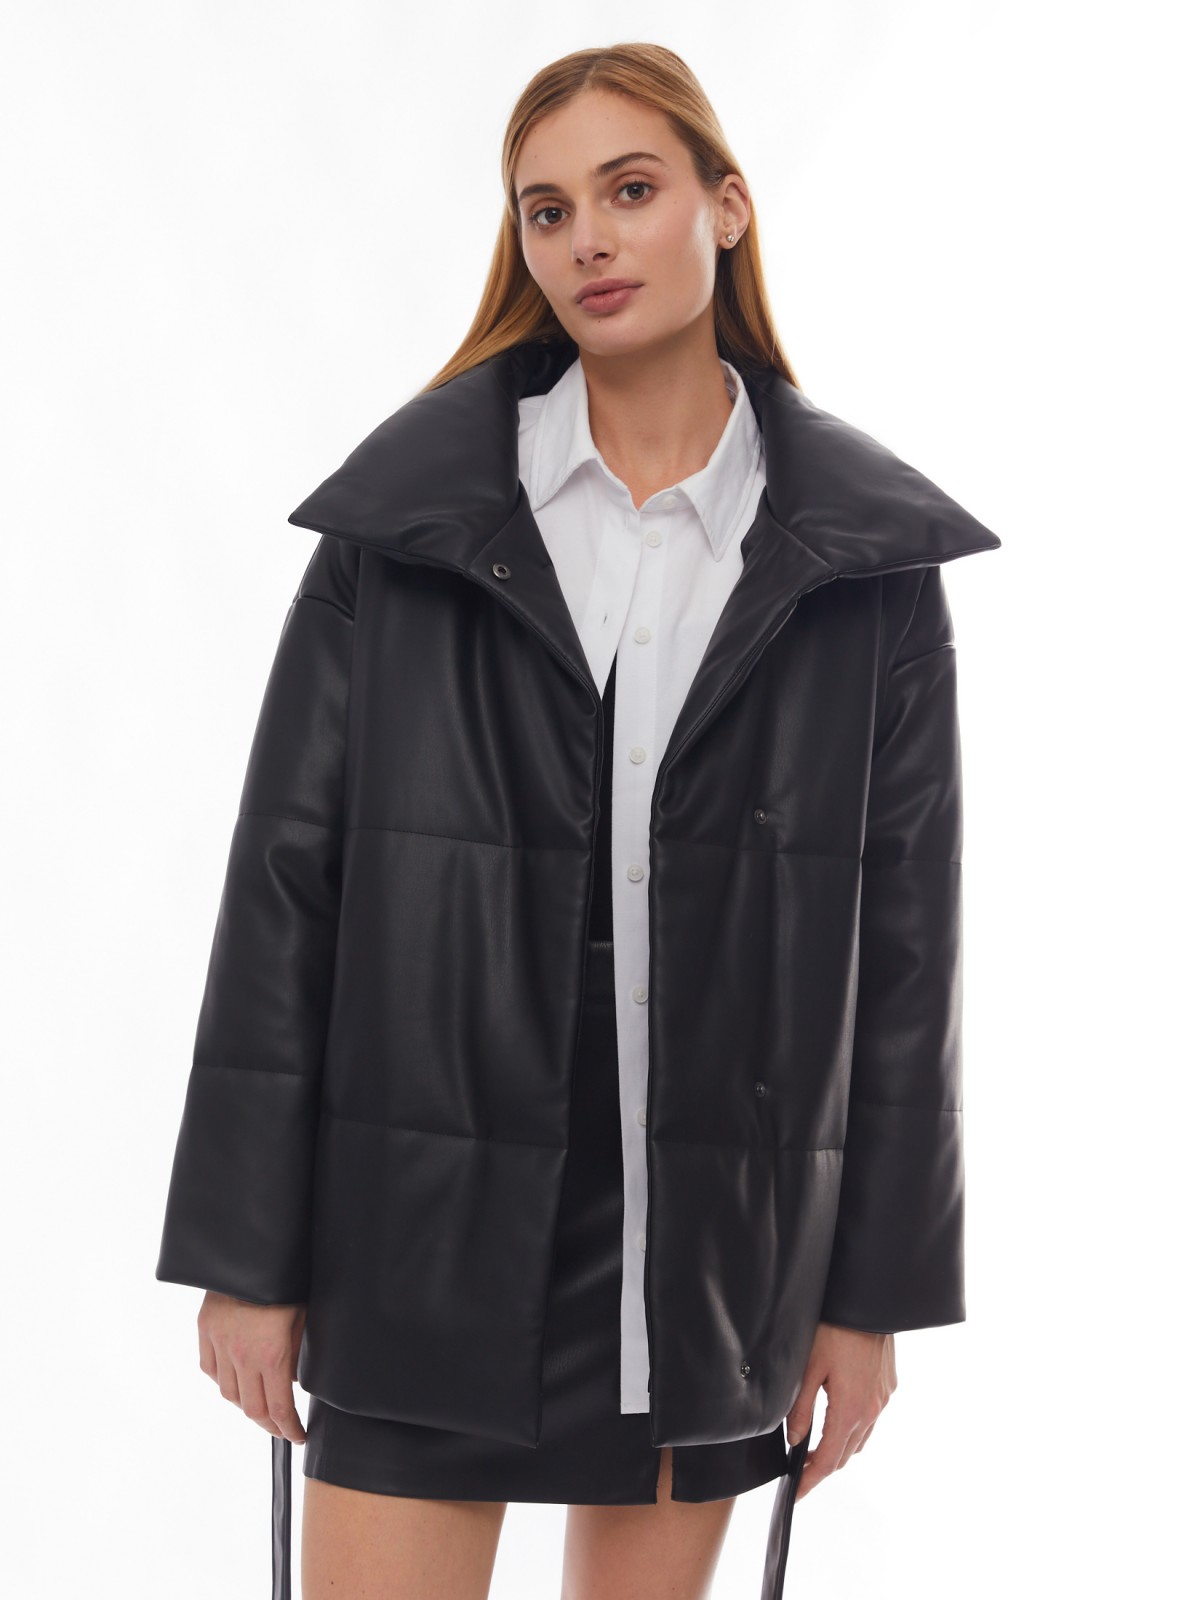 Тёплая дутая куртка из экокожи с высоким воротником и поясом zolla 02412512N104, цвет черный, размер XS - фото 1